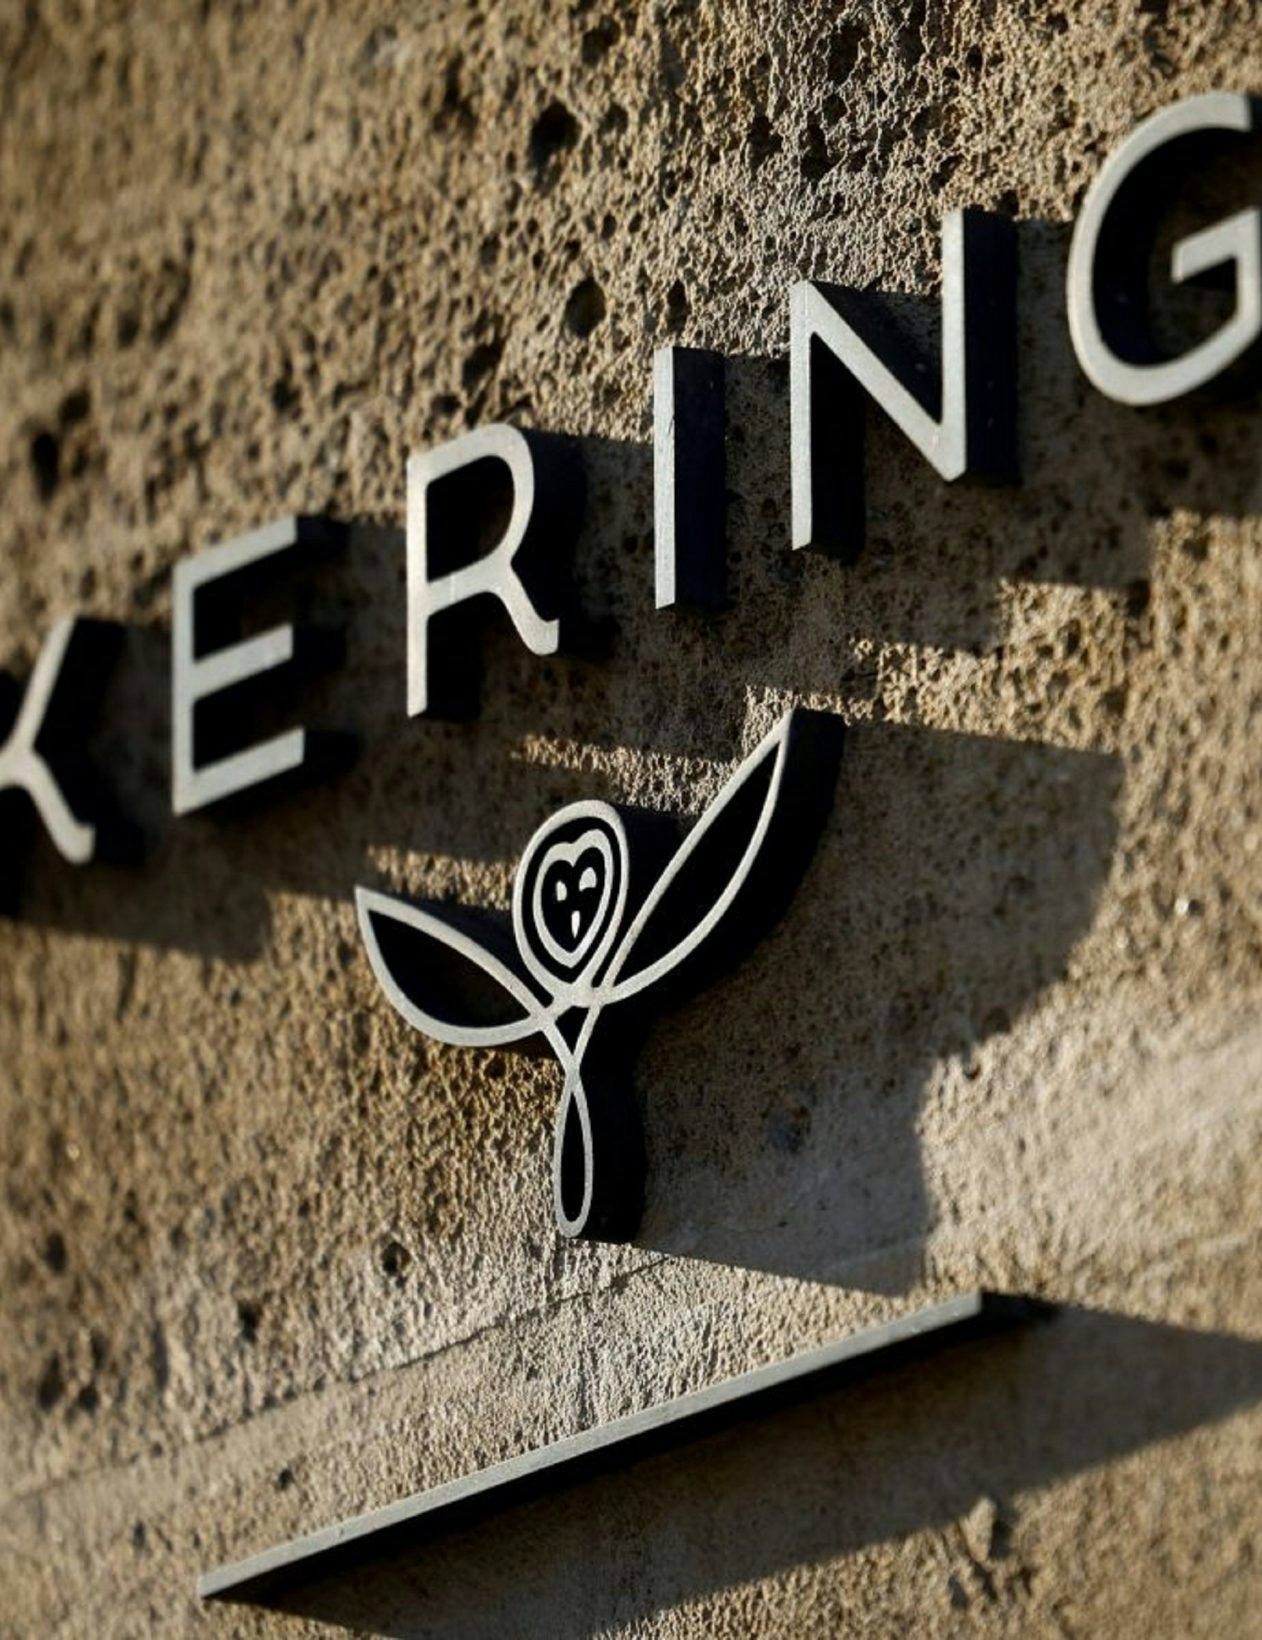 Kering announces a €3.8 billion bond issue